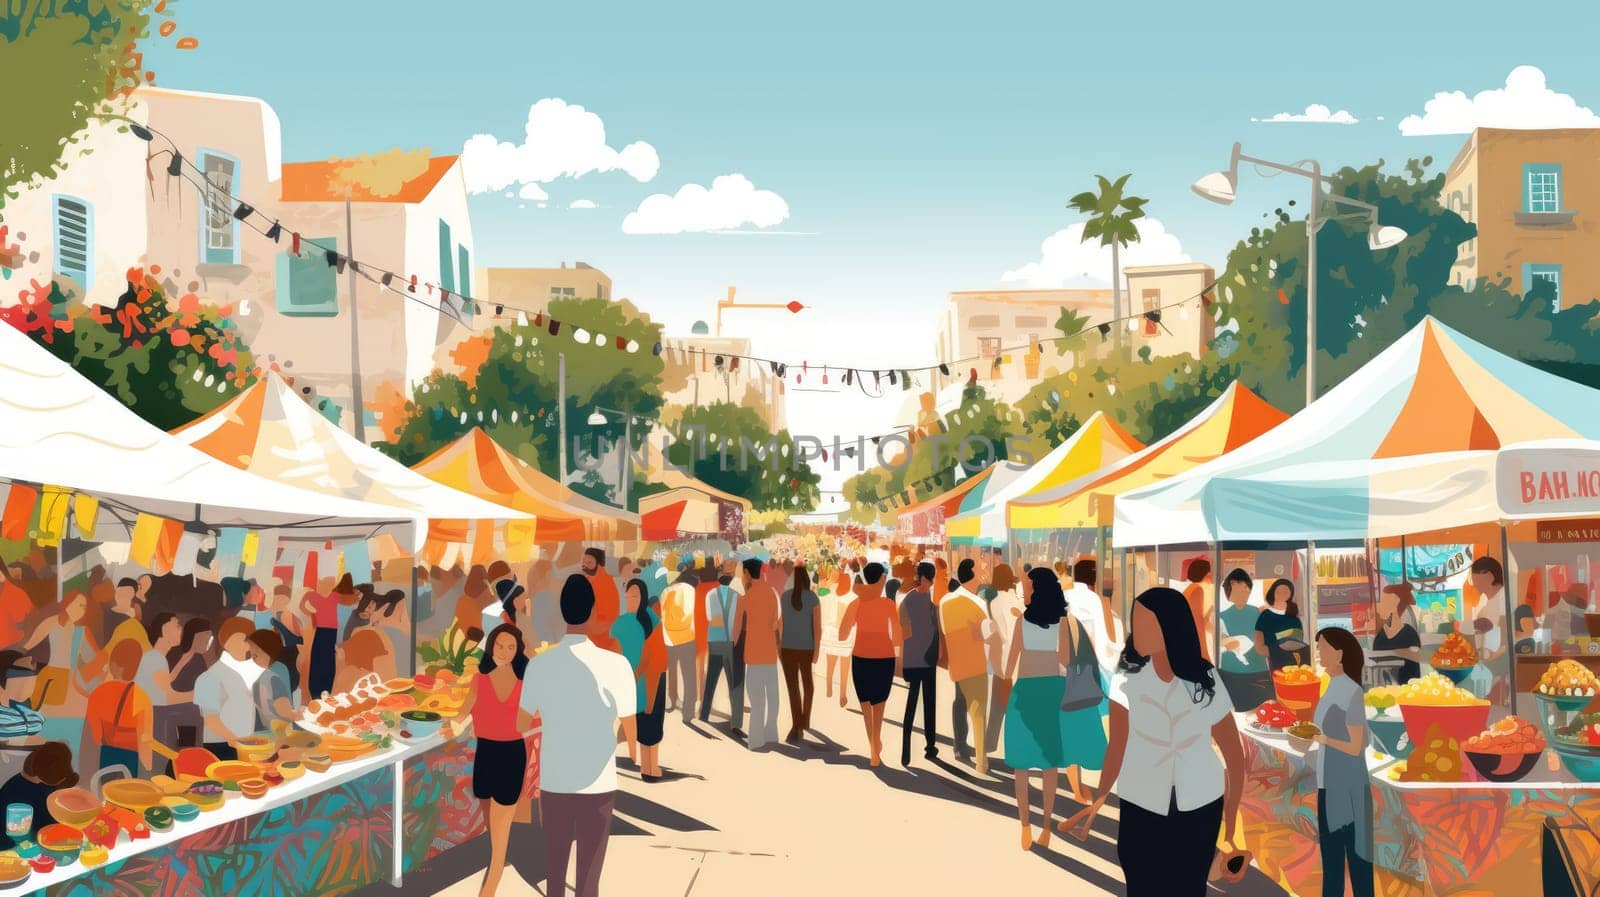 Street food fiesta cartoon illustration - AI generated. Street, food, fair, cars, people.